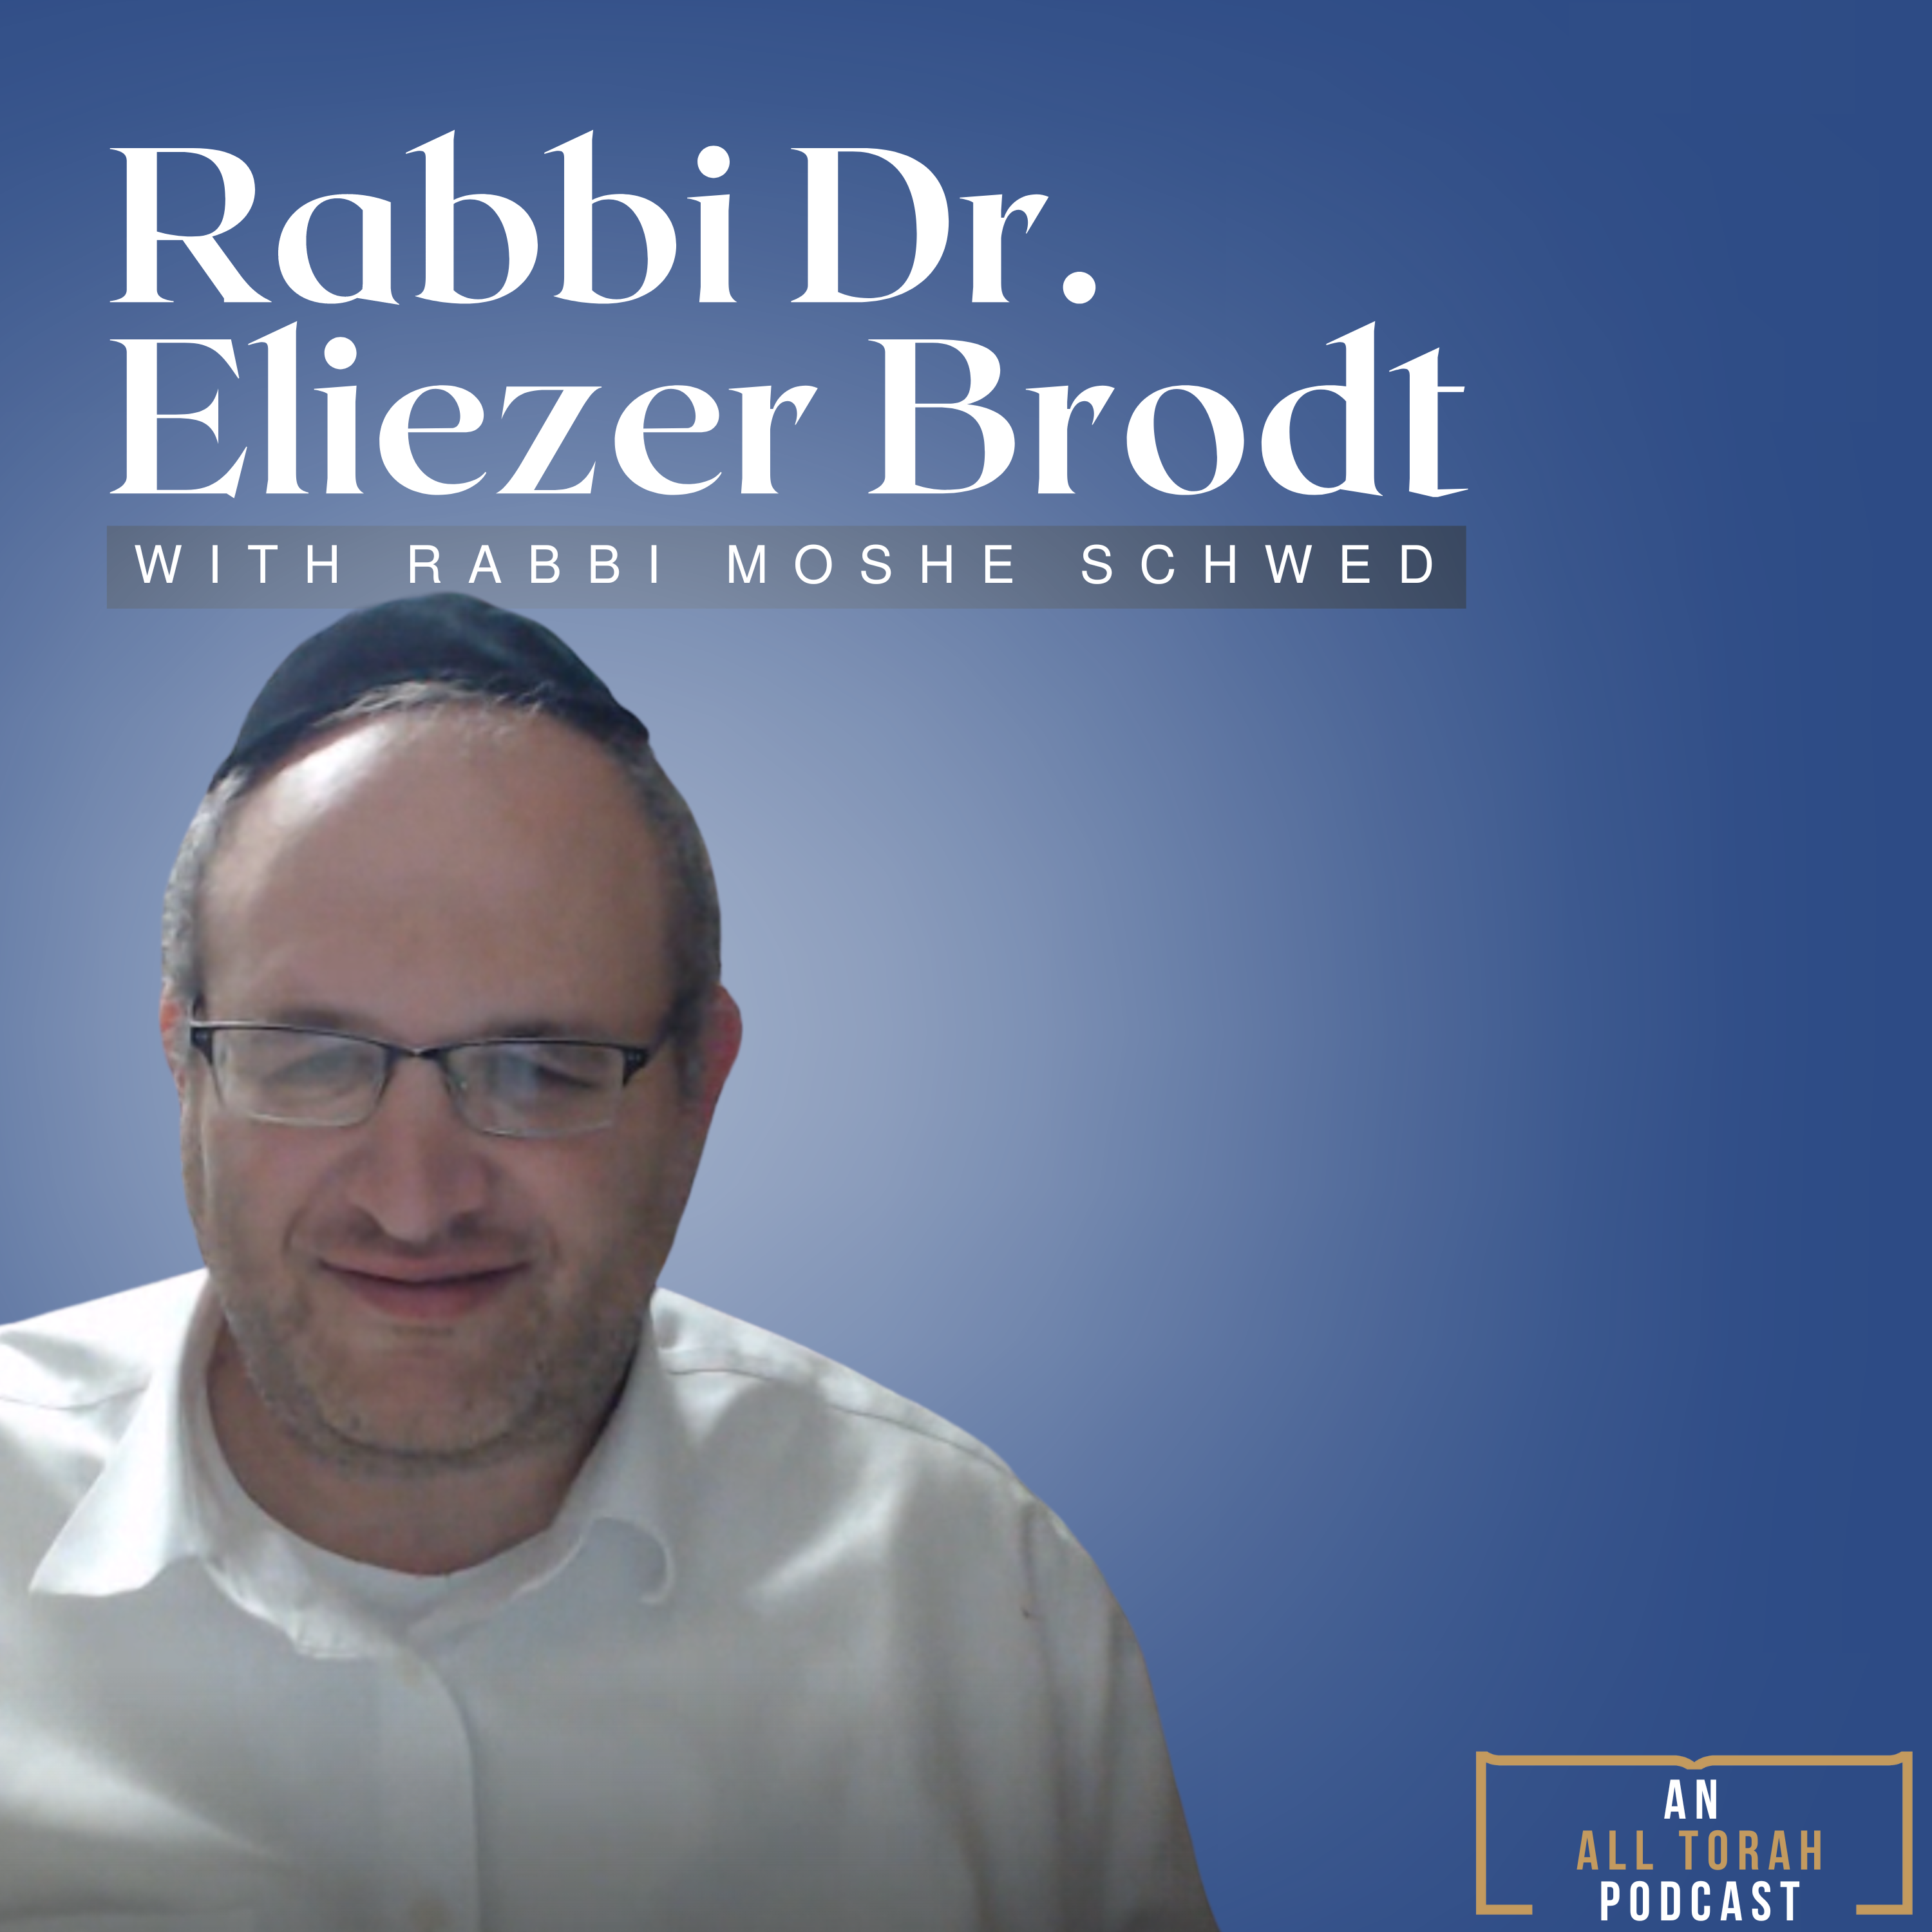 New Episodes From Rabbi Dr. Eliezer Brodt